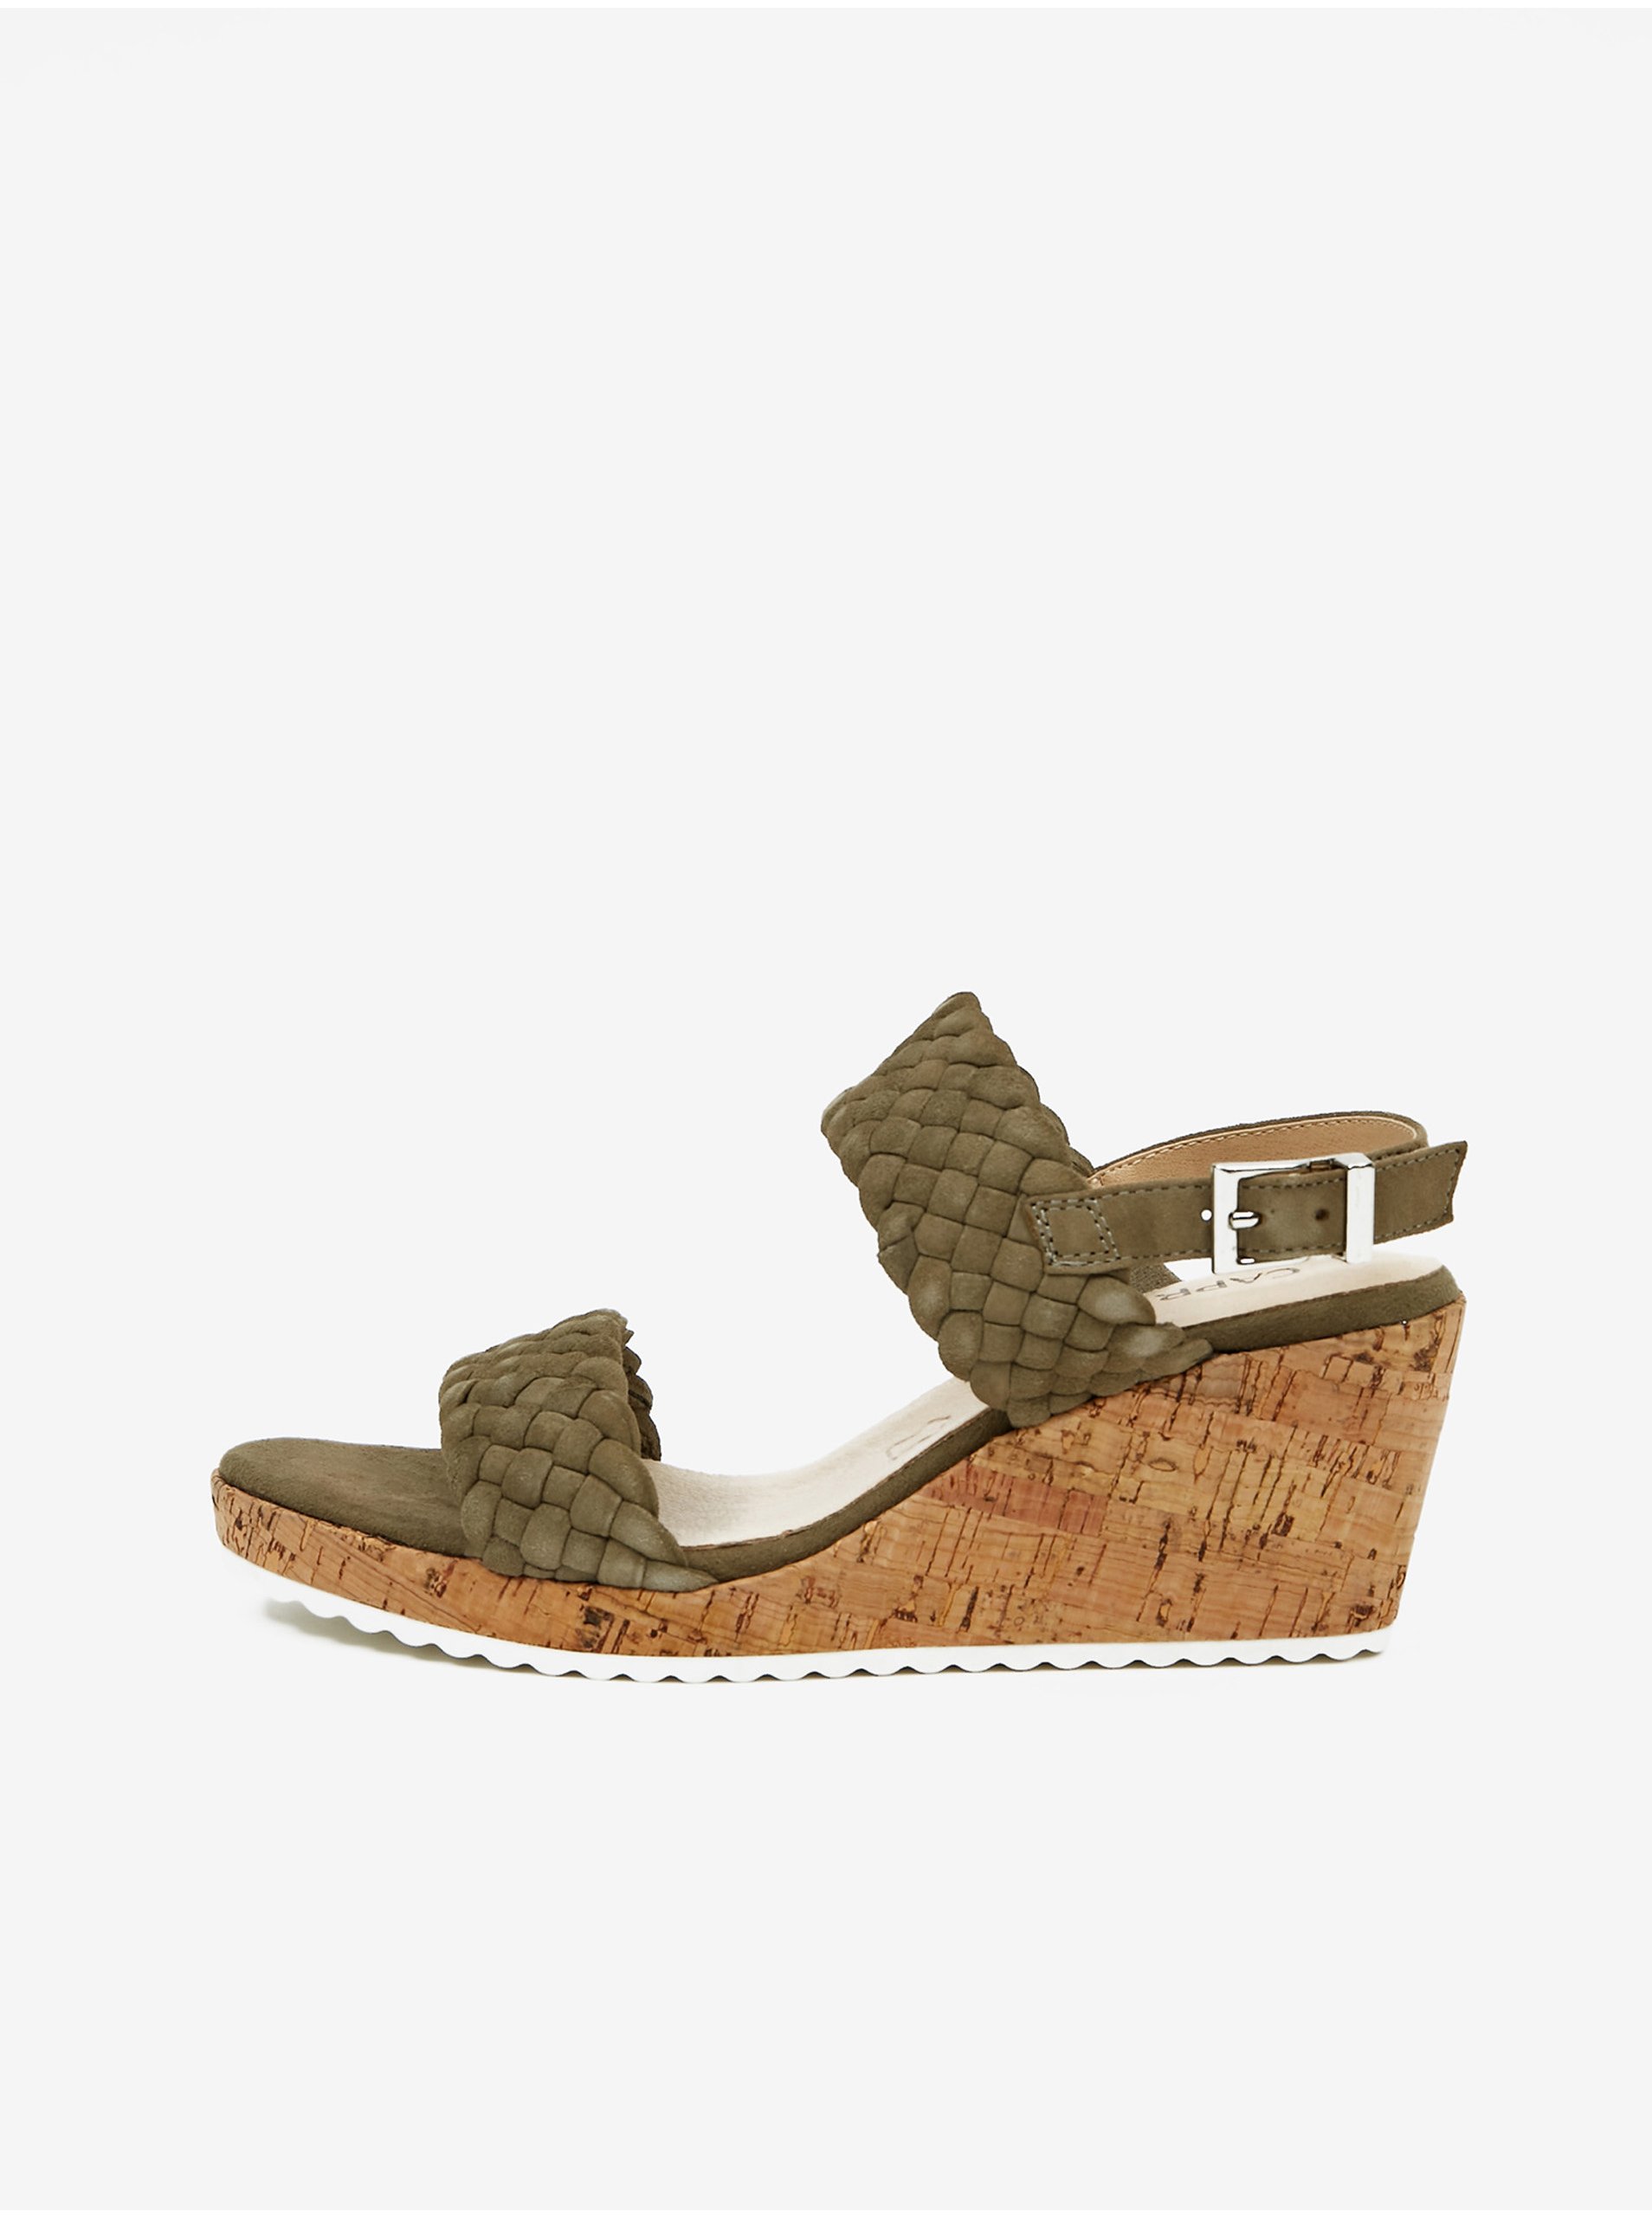 E-shop Kaki dámske kožené sandále na podpätku Caprice